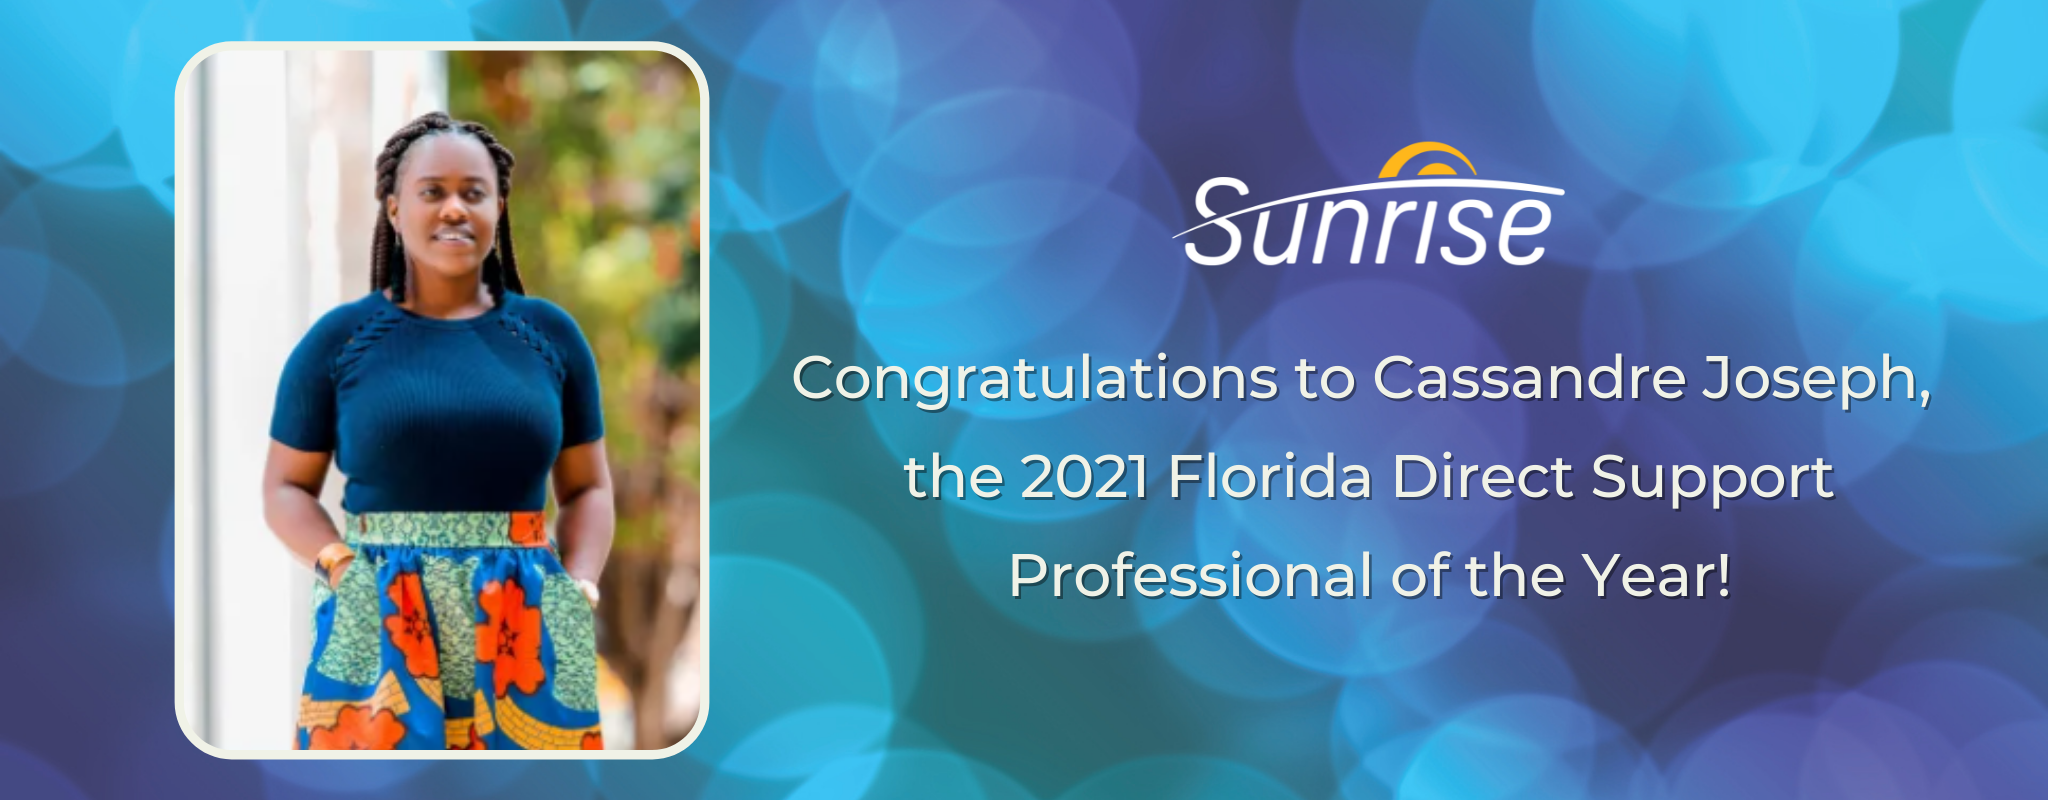 ¡Felicitaciones a Cassandre Joseph, el Profesional de Apoyo Directo de Florida del año 2021!